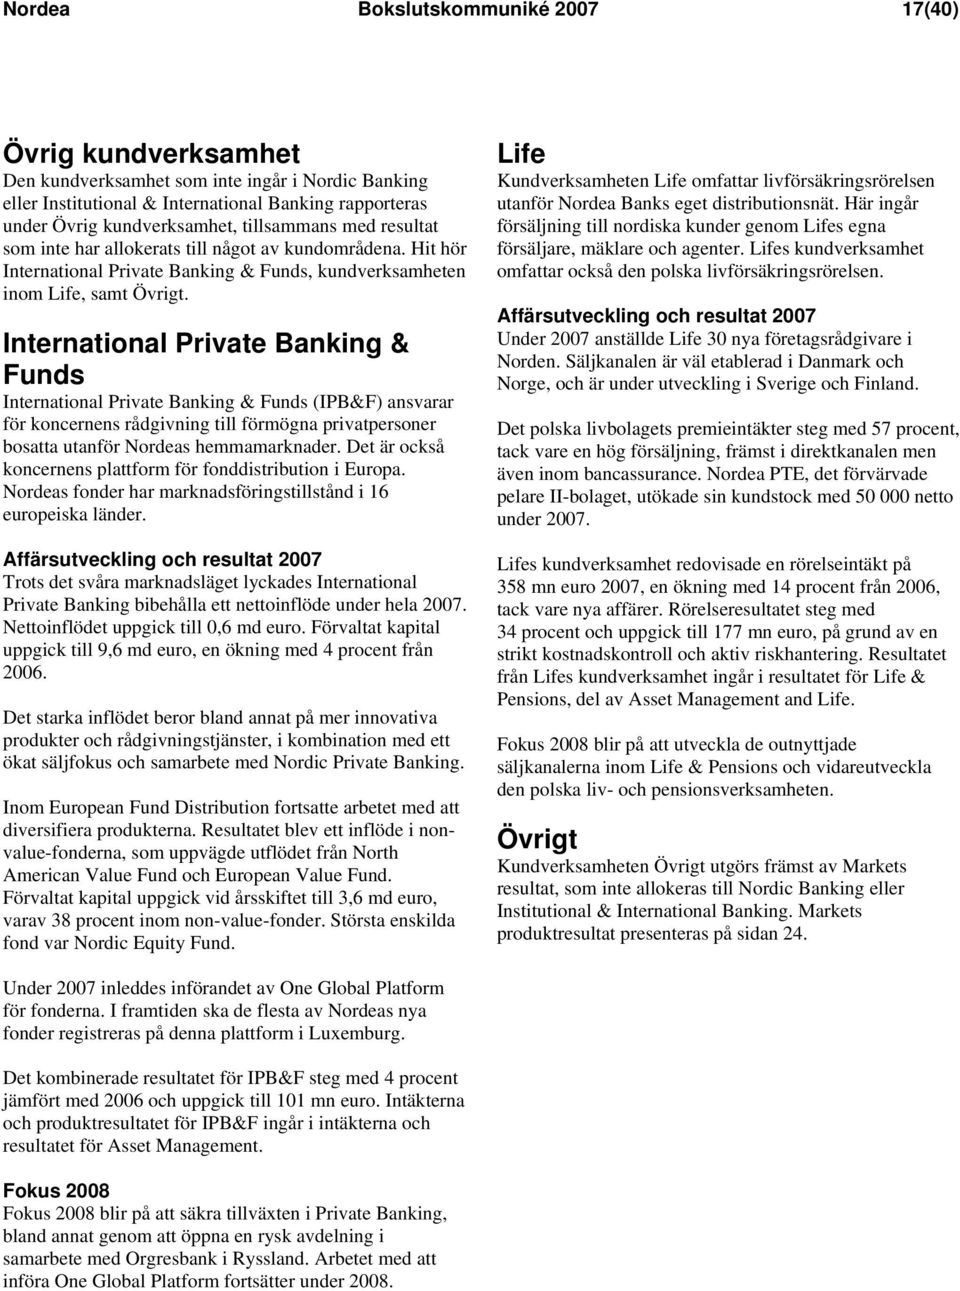 International Private Banking & Funds International Private Banking & Funds (IPB&F) ansvarar för koncernens rådgivning till förmögna privatpersoner bosatta utanför Nordeas hemmamarknader.